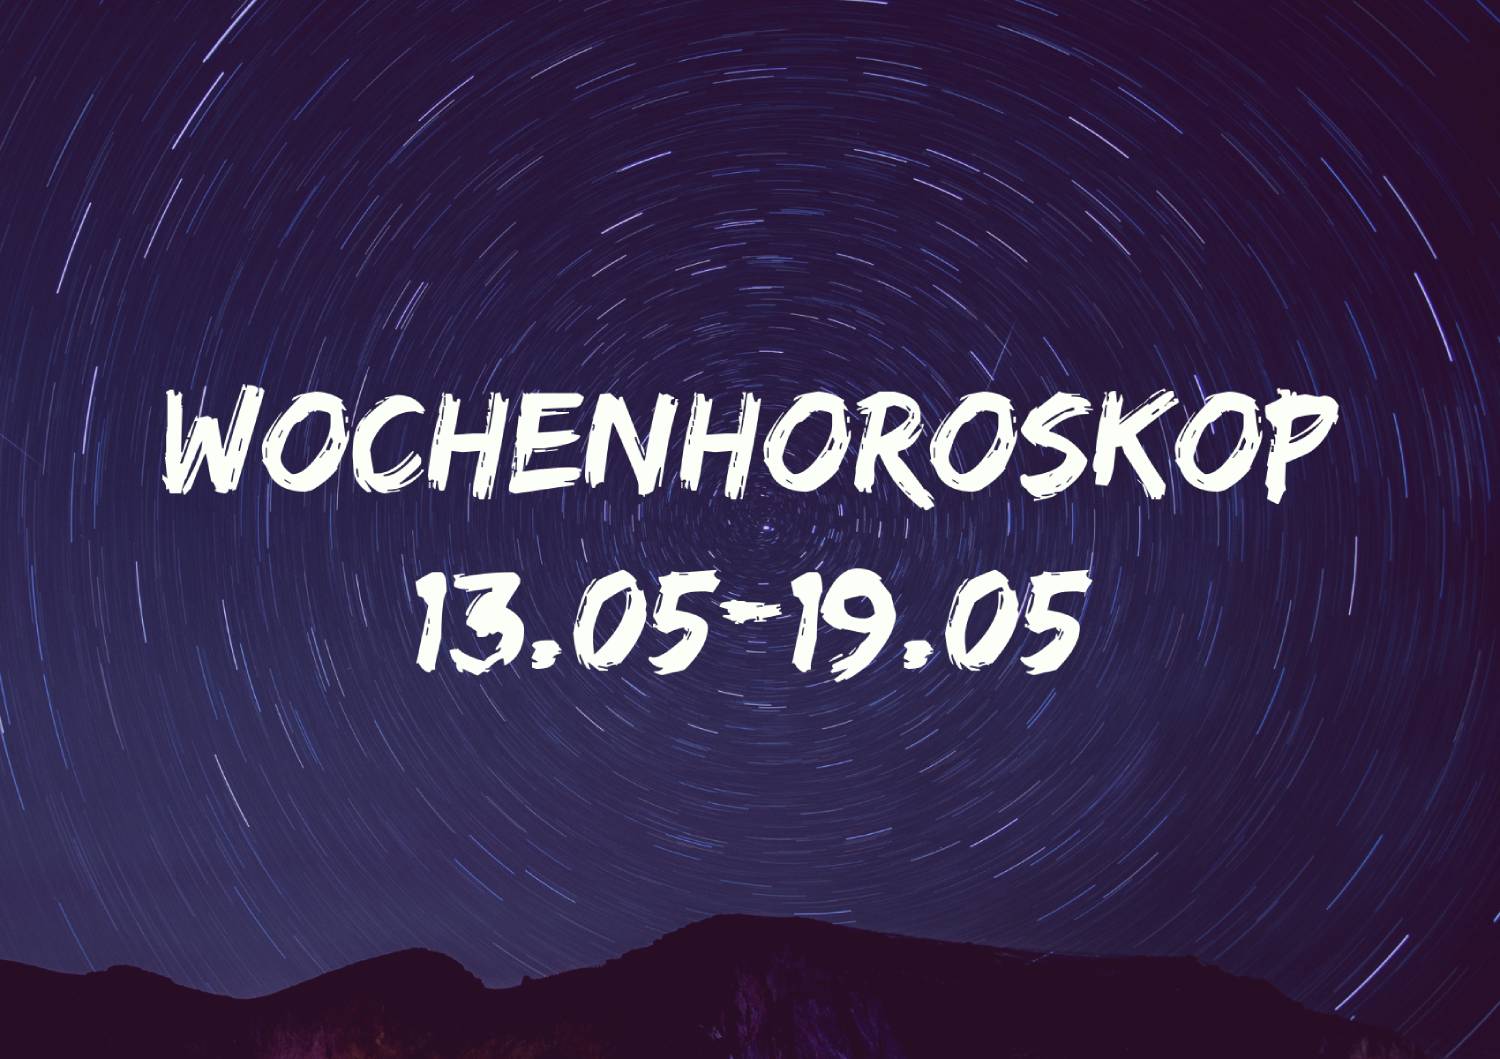 Wochenhoroskop 13.05-19.05